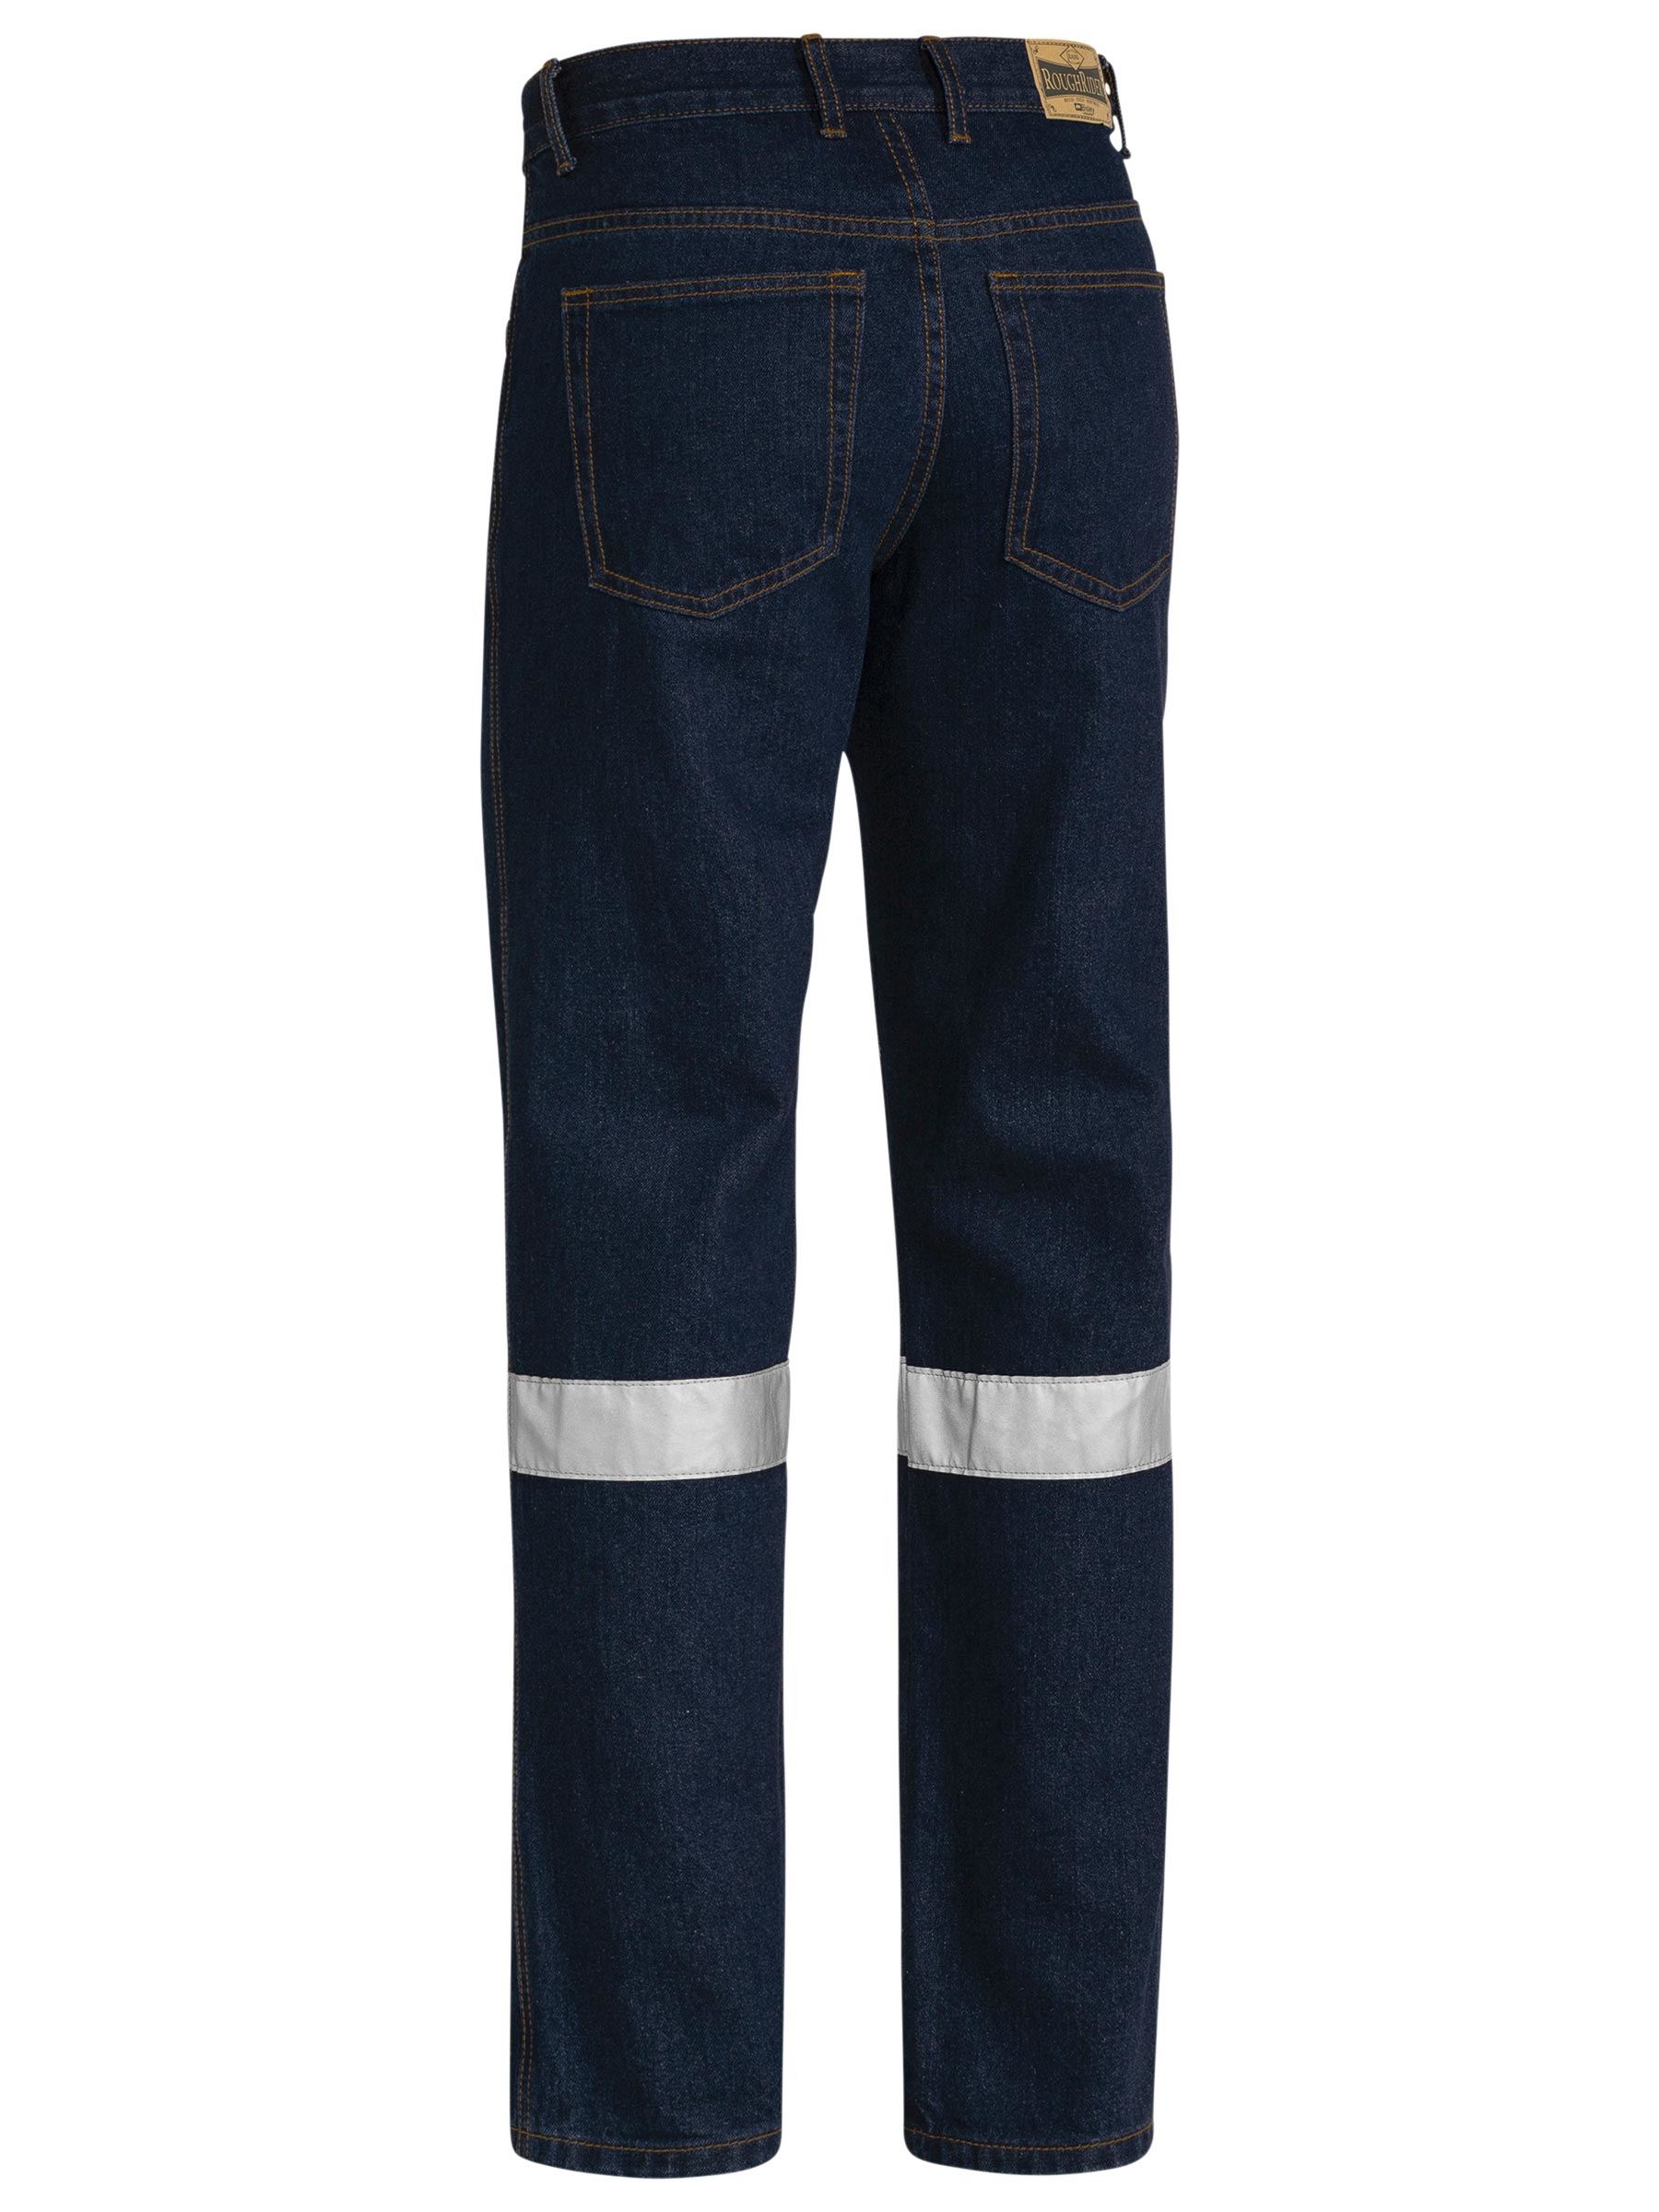 Taped Rough Rider Denim Jeans - BP6050T - Bisley Safetywear